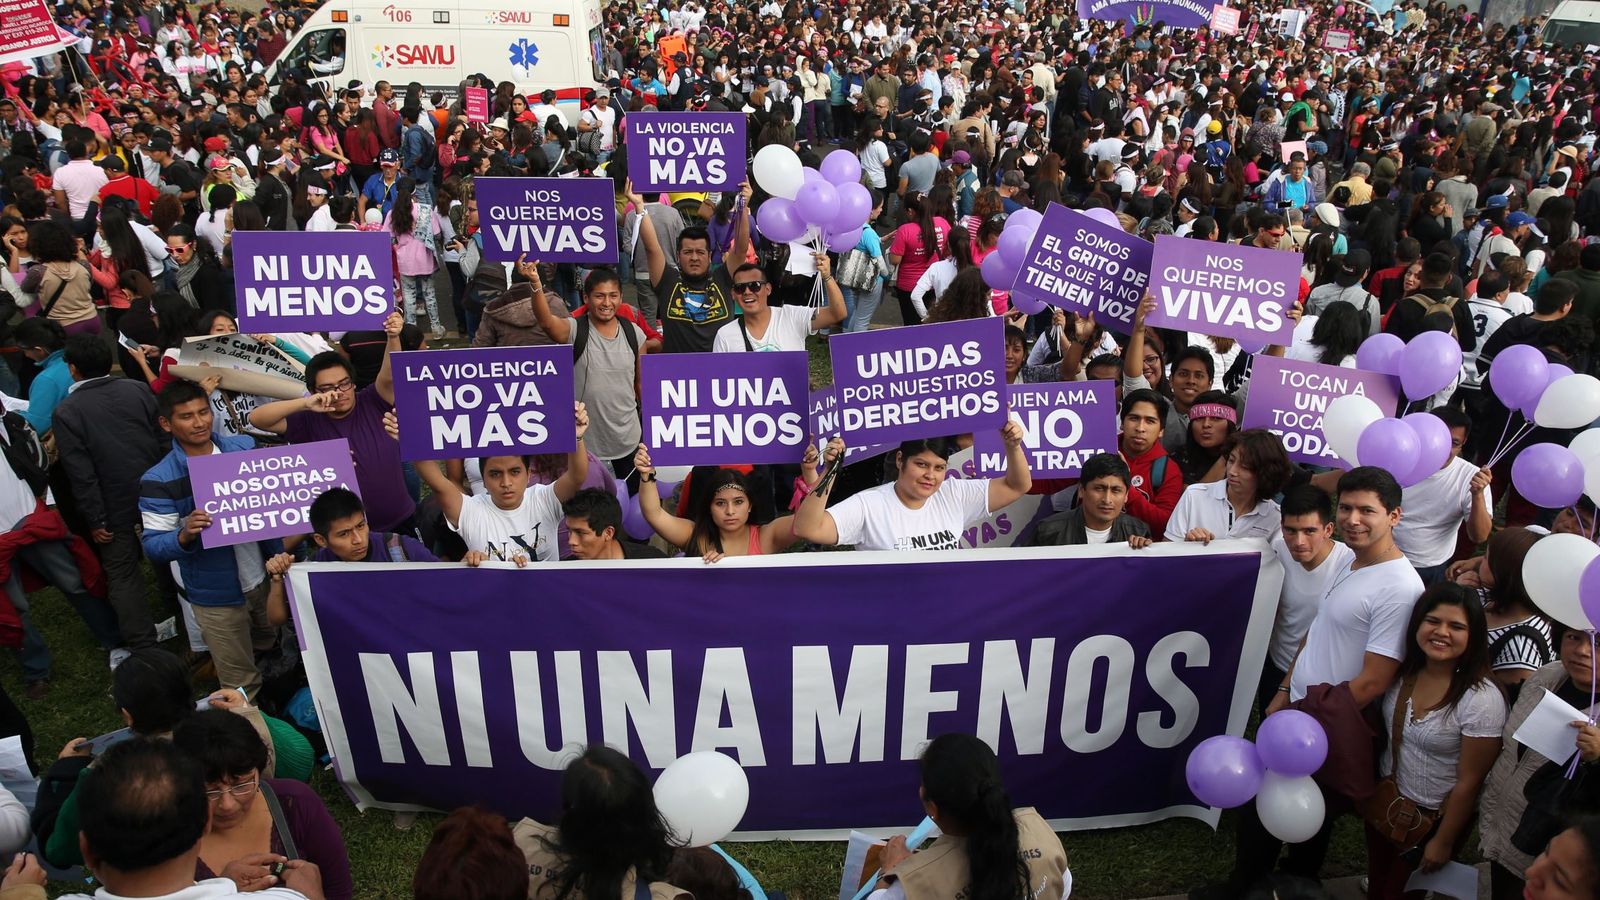 Foto: La violencia de género no entiende de países. En la imagen, una manifestación contra lacra en Perú. (Efe)